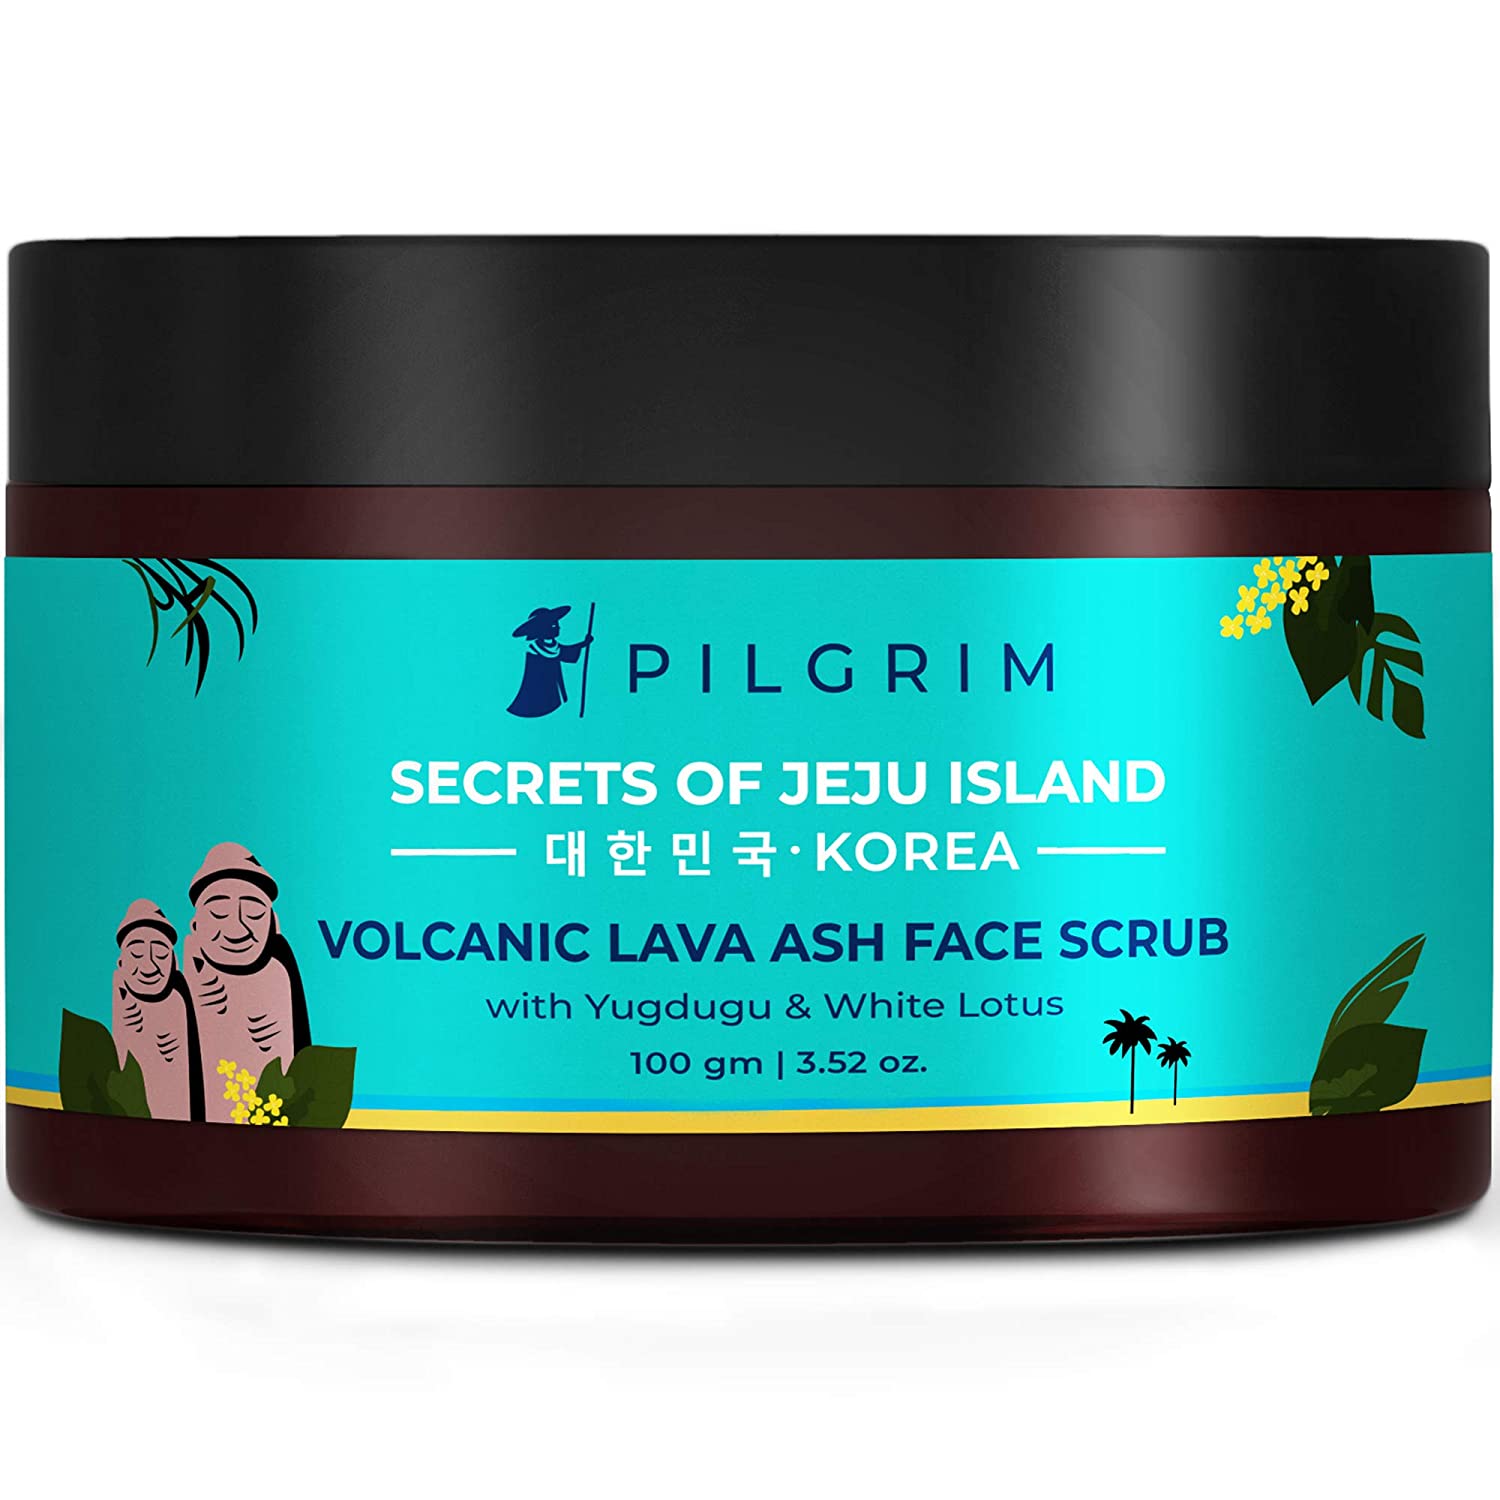 ilgrim volcanic lave ash face scrub